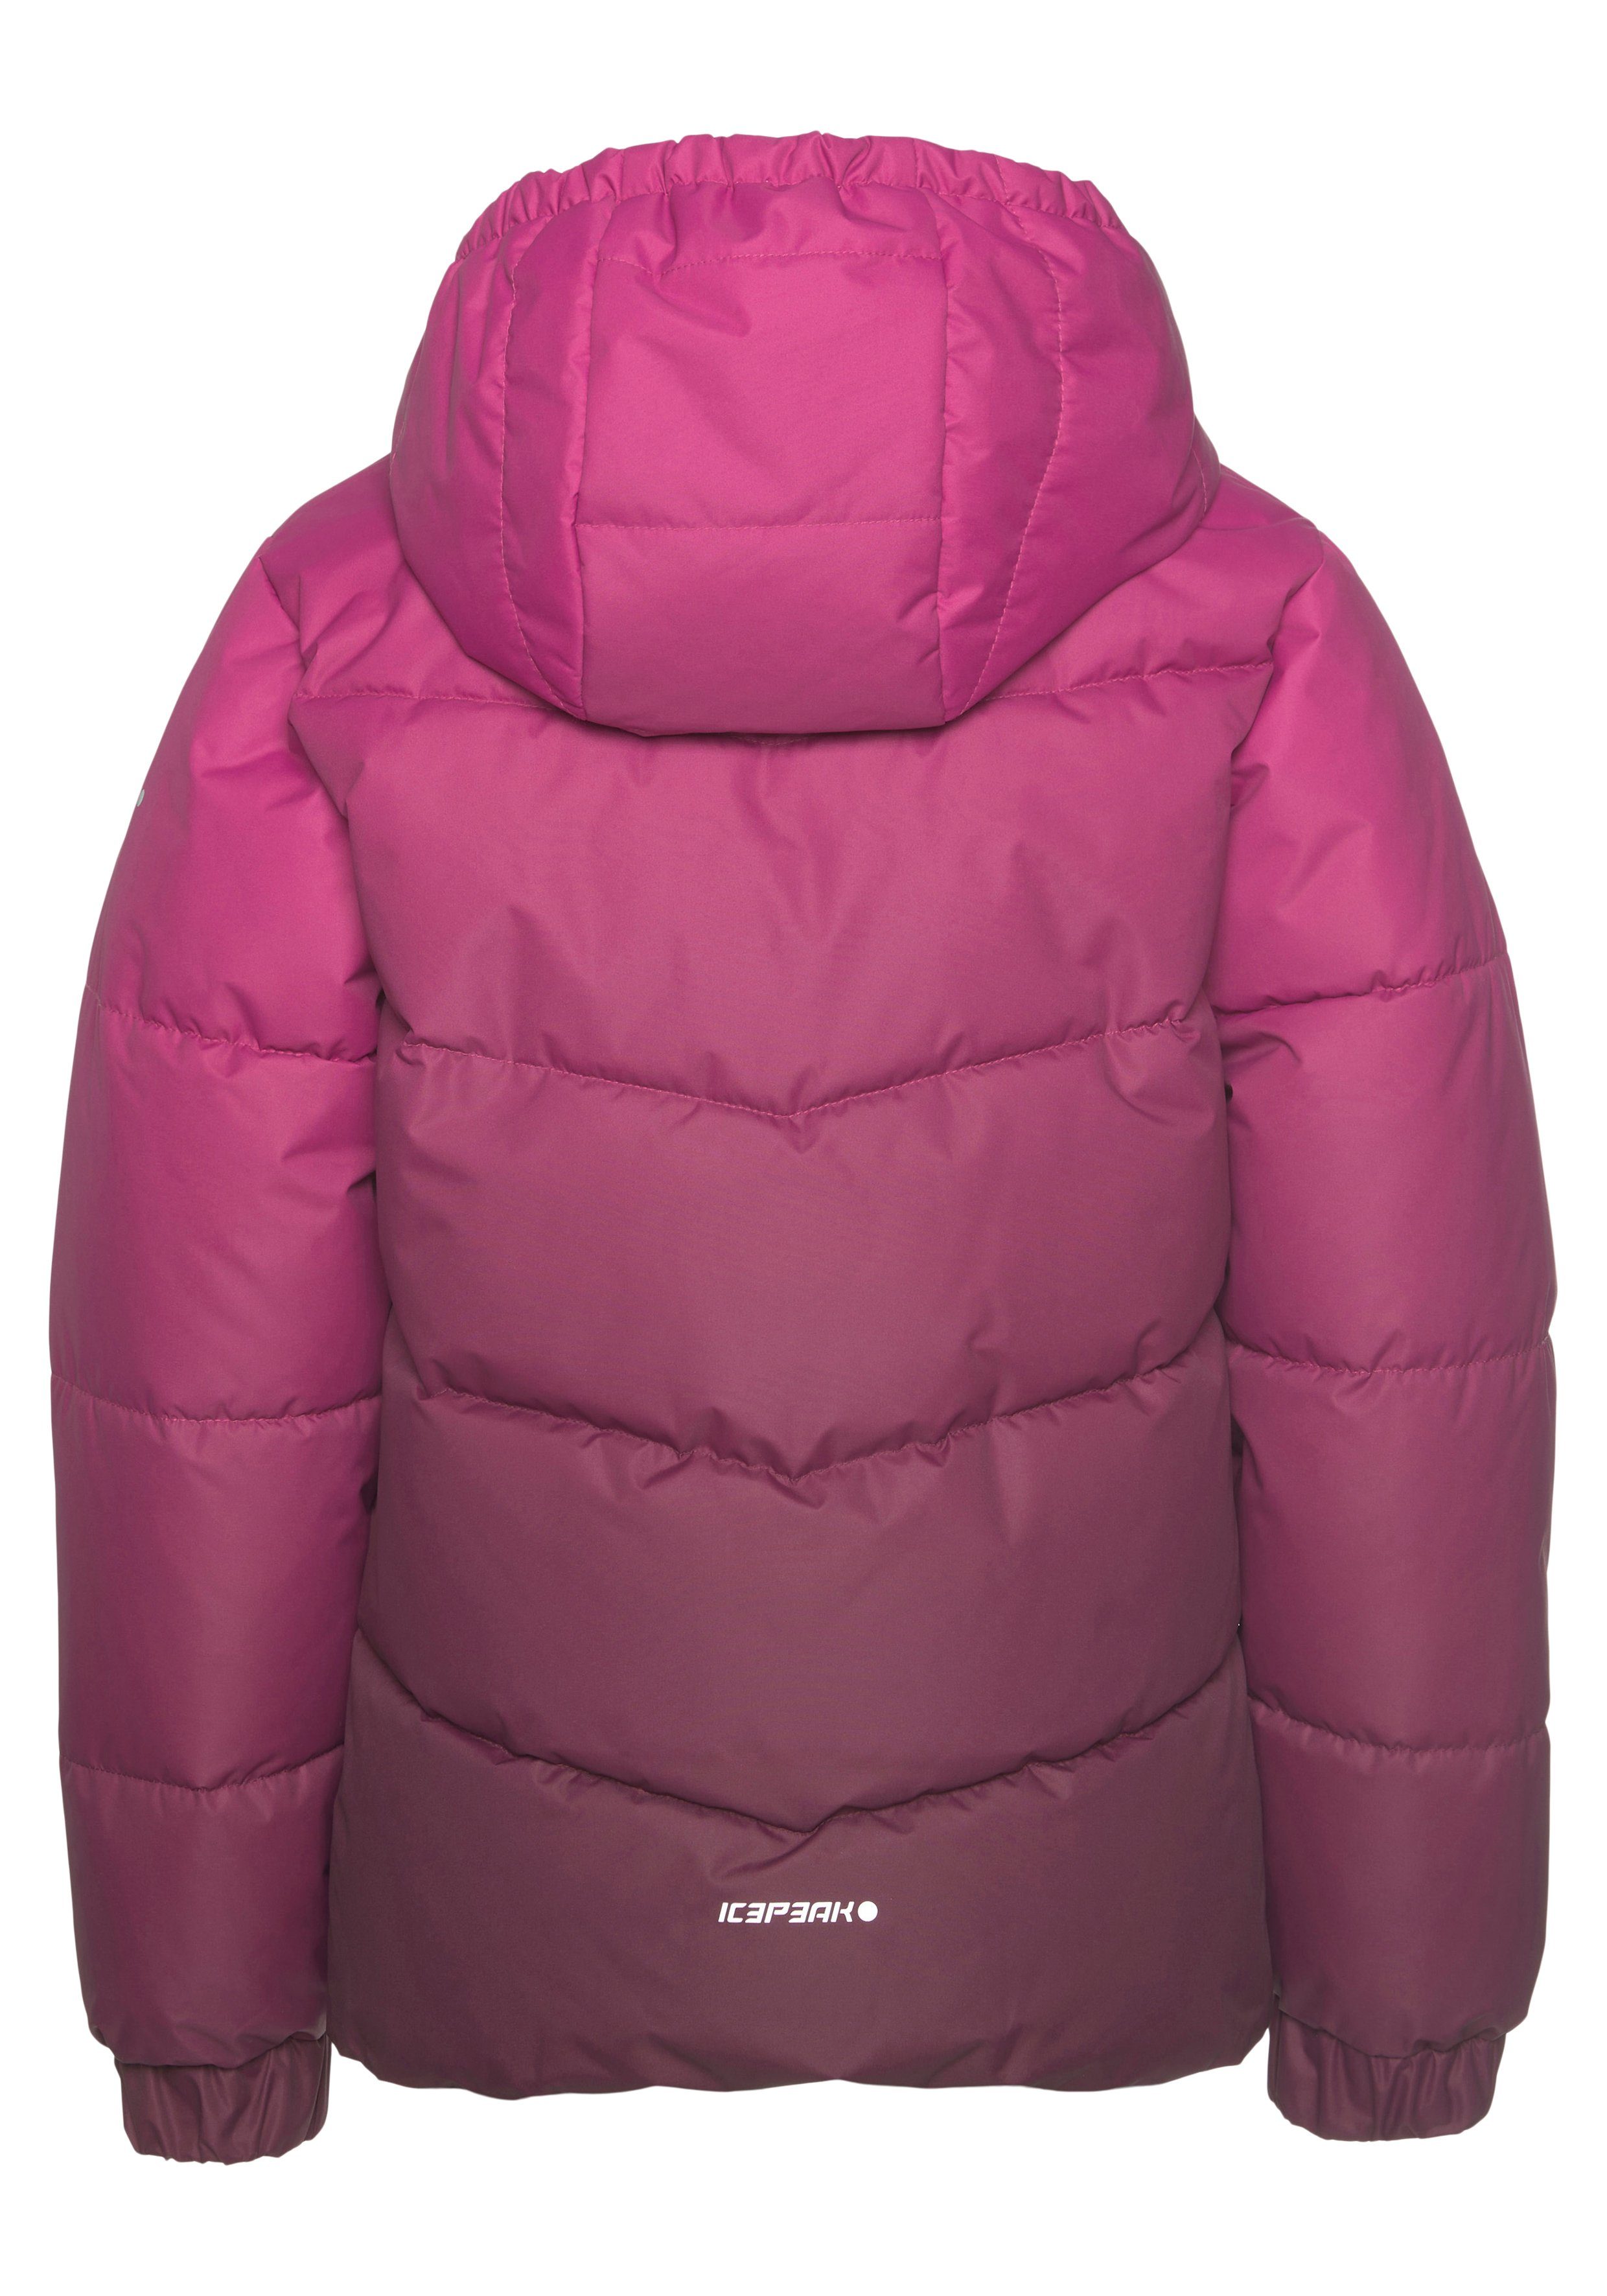 JR PIQEON & für Atmungsaktiv & Kinder Windabweisend - Icepeak Wasserabweisend pink Steppjacke